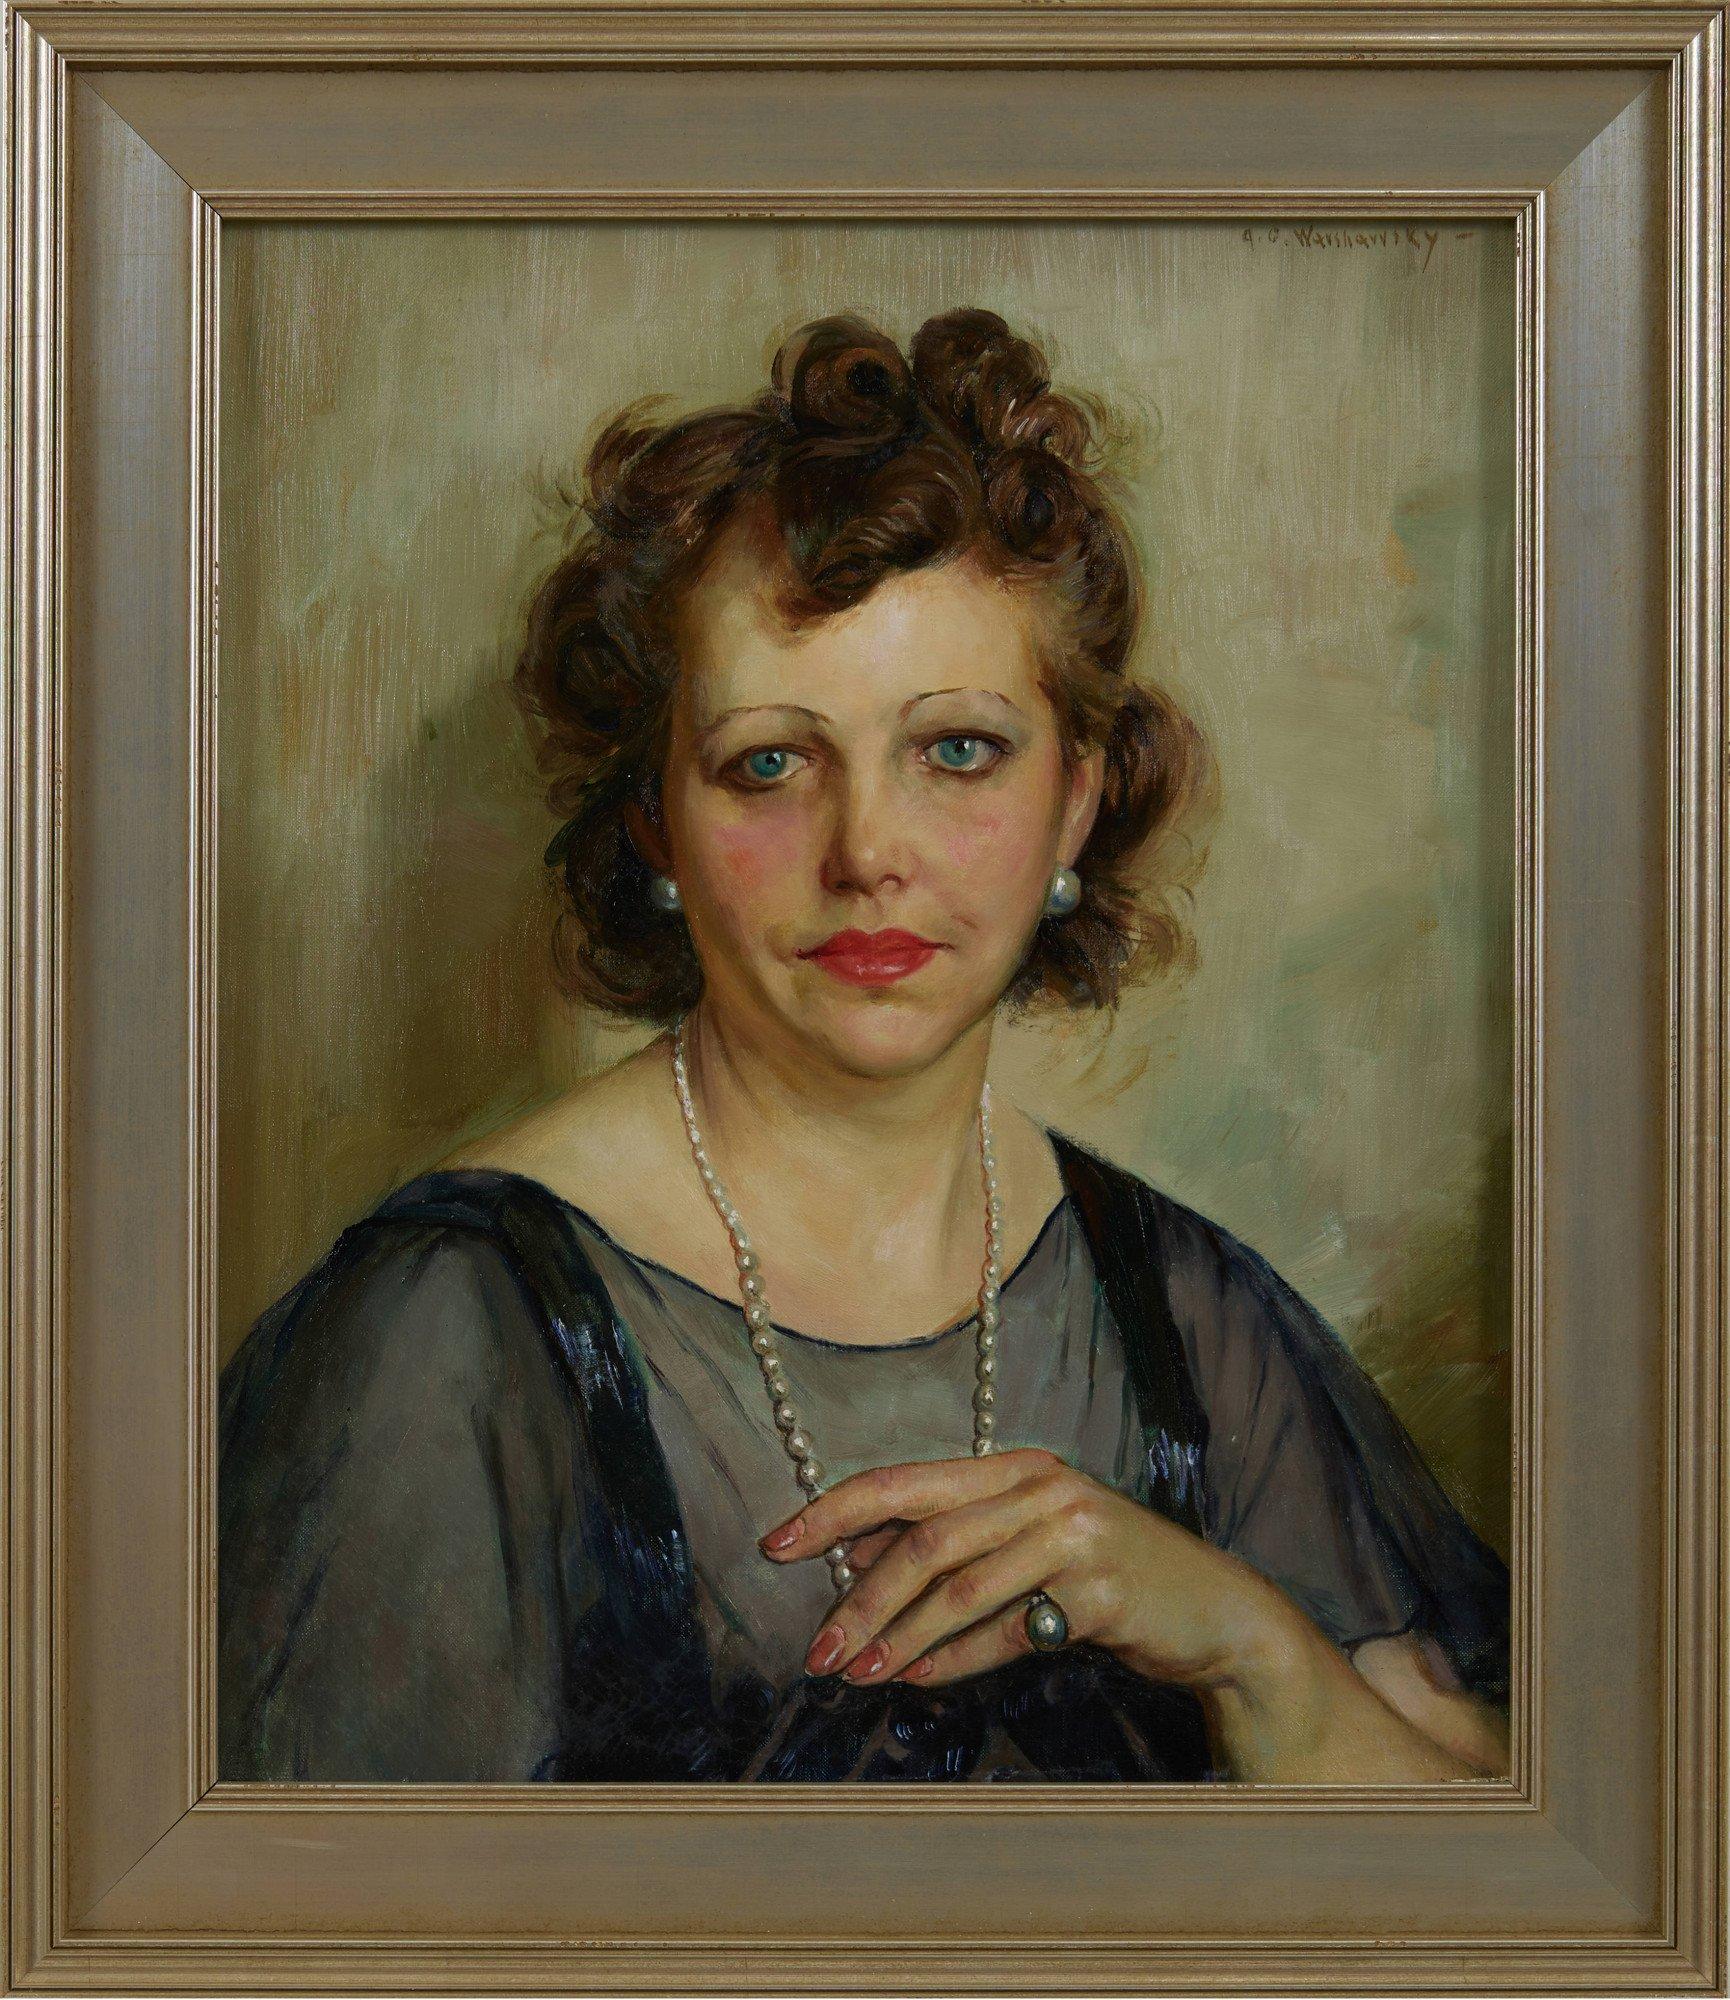 The Antique Dealer, Portrait de femme à l'huile du 20e siècle, école de Cleveland - Painting de Abel Warshawsky